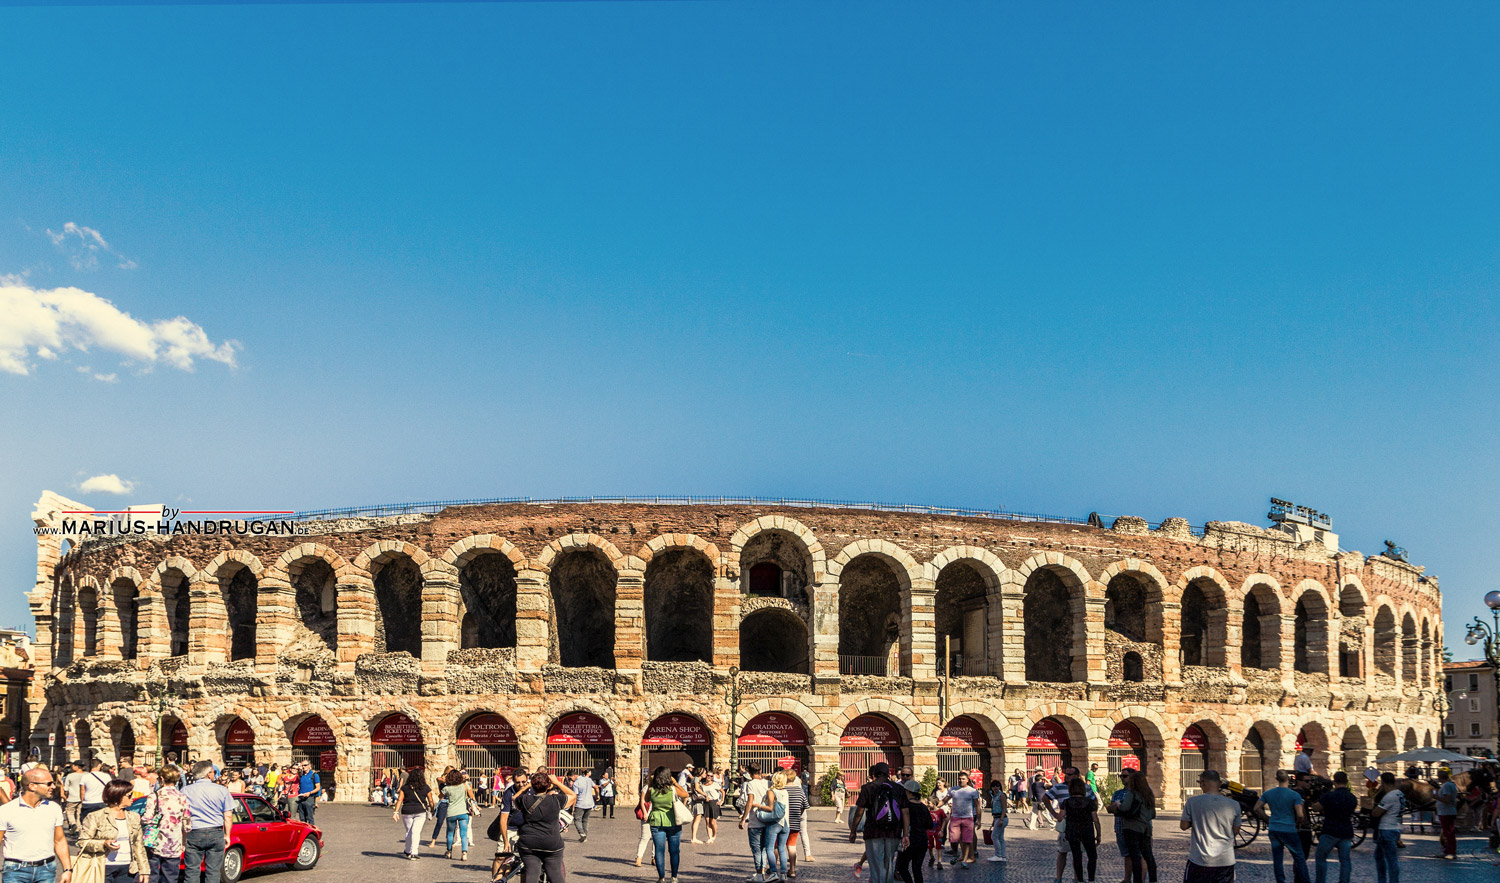 Arena von Verona